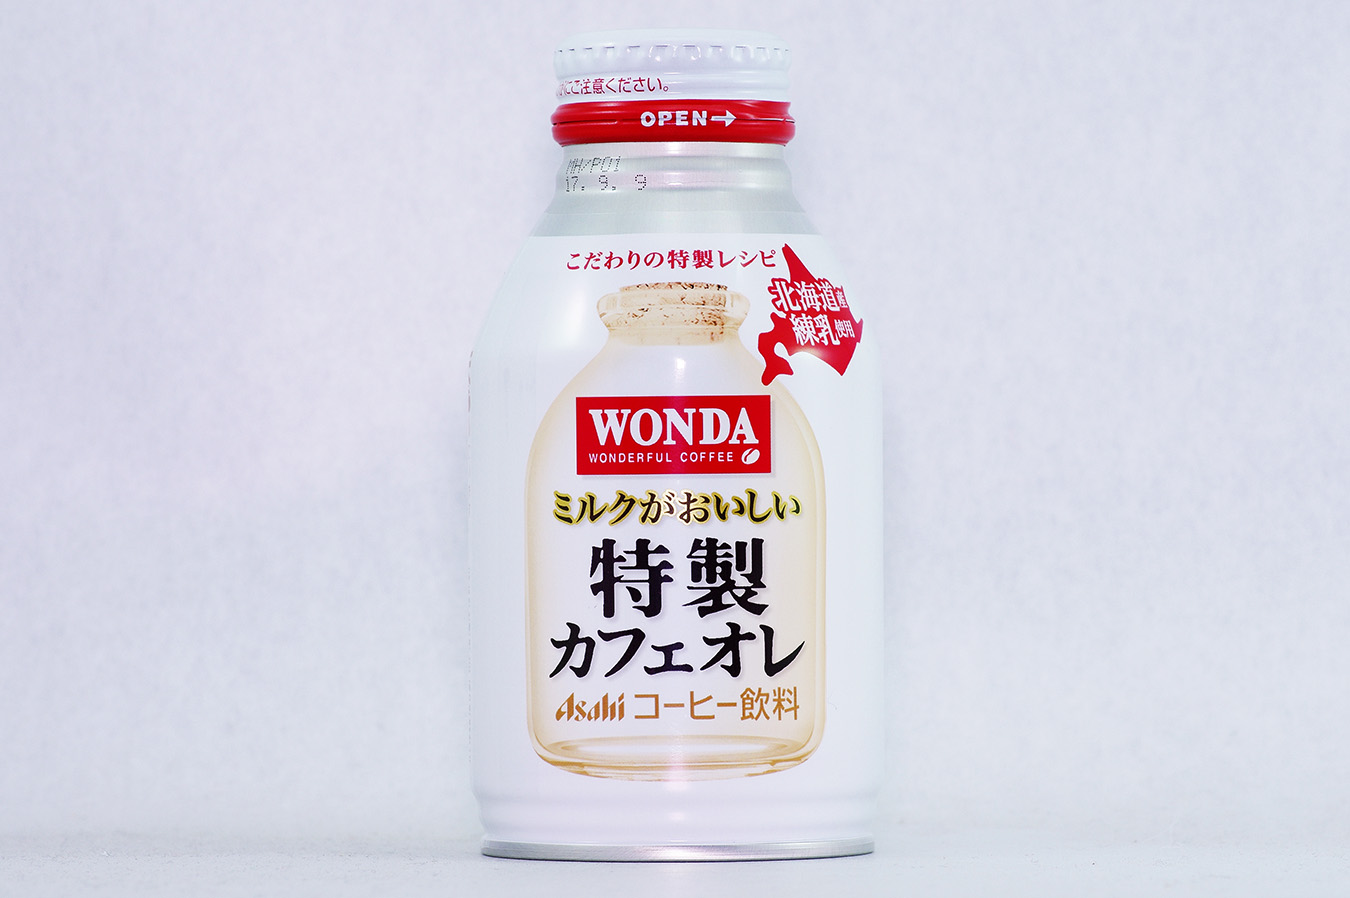 WONDA 特製カフェオレ ボトル缶260g 2016年10月